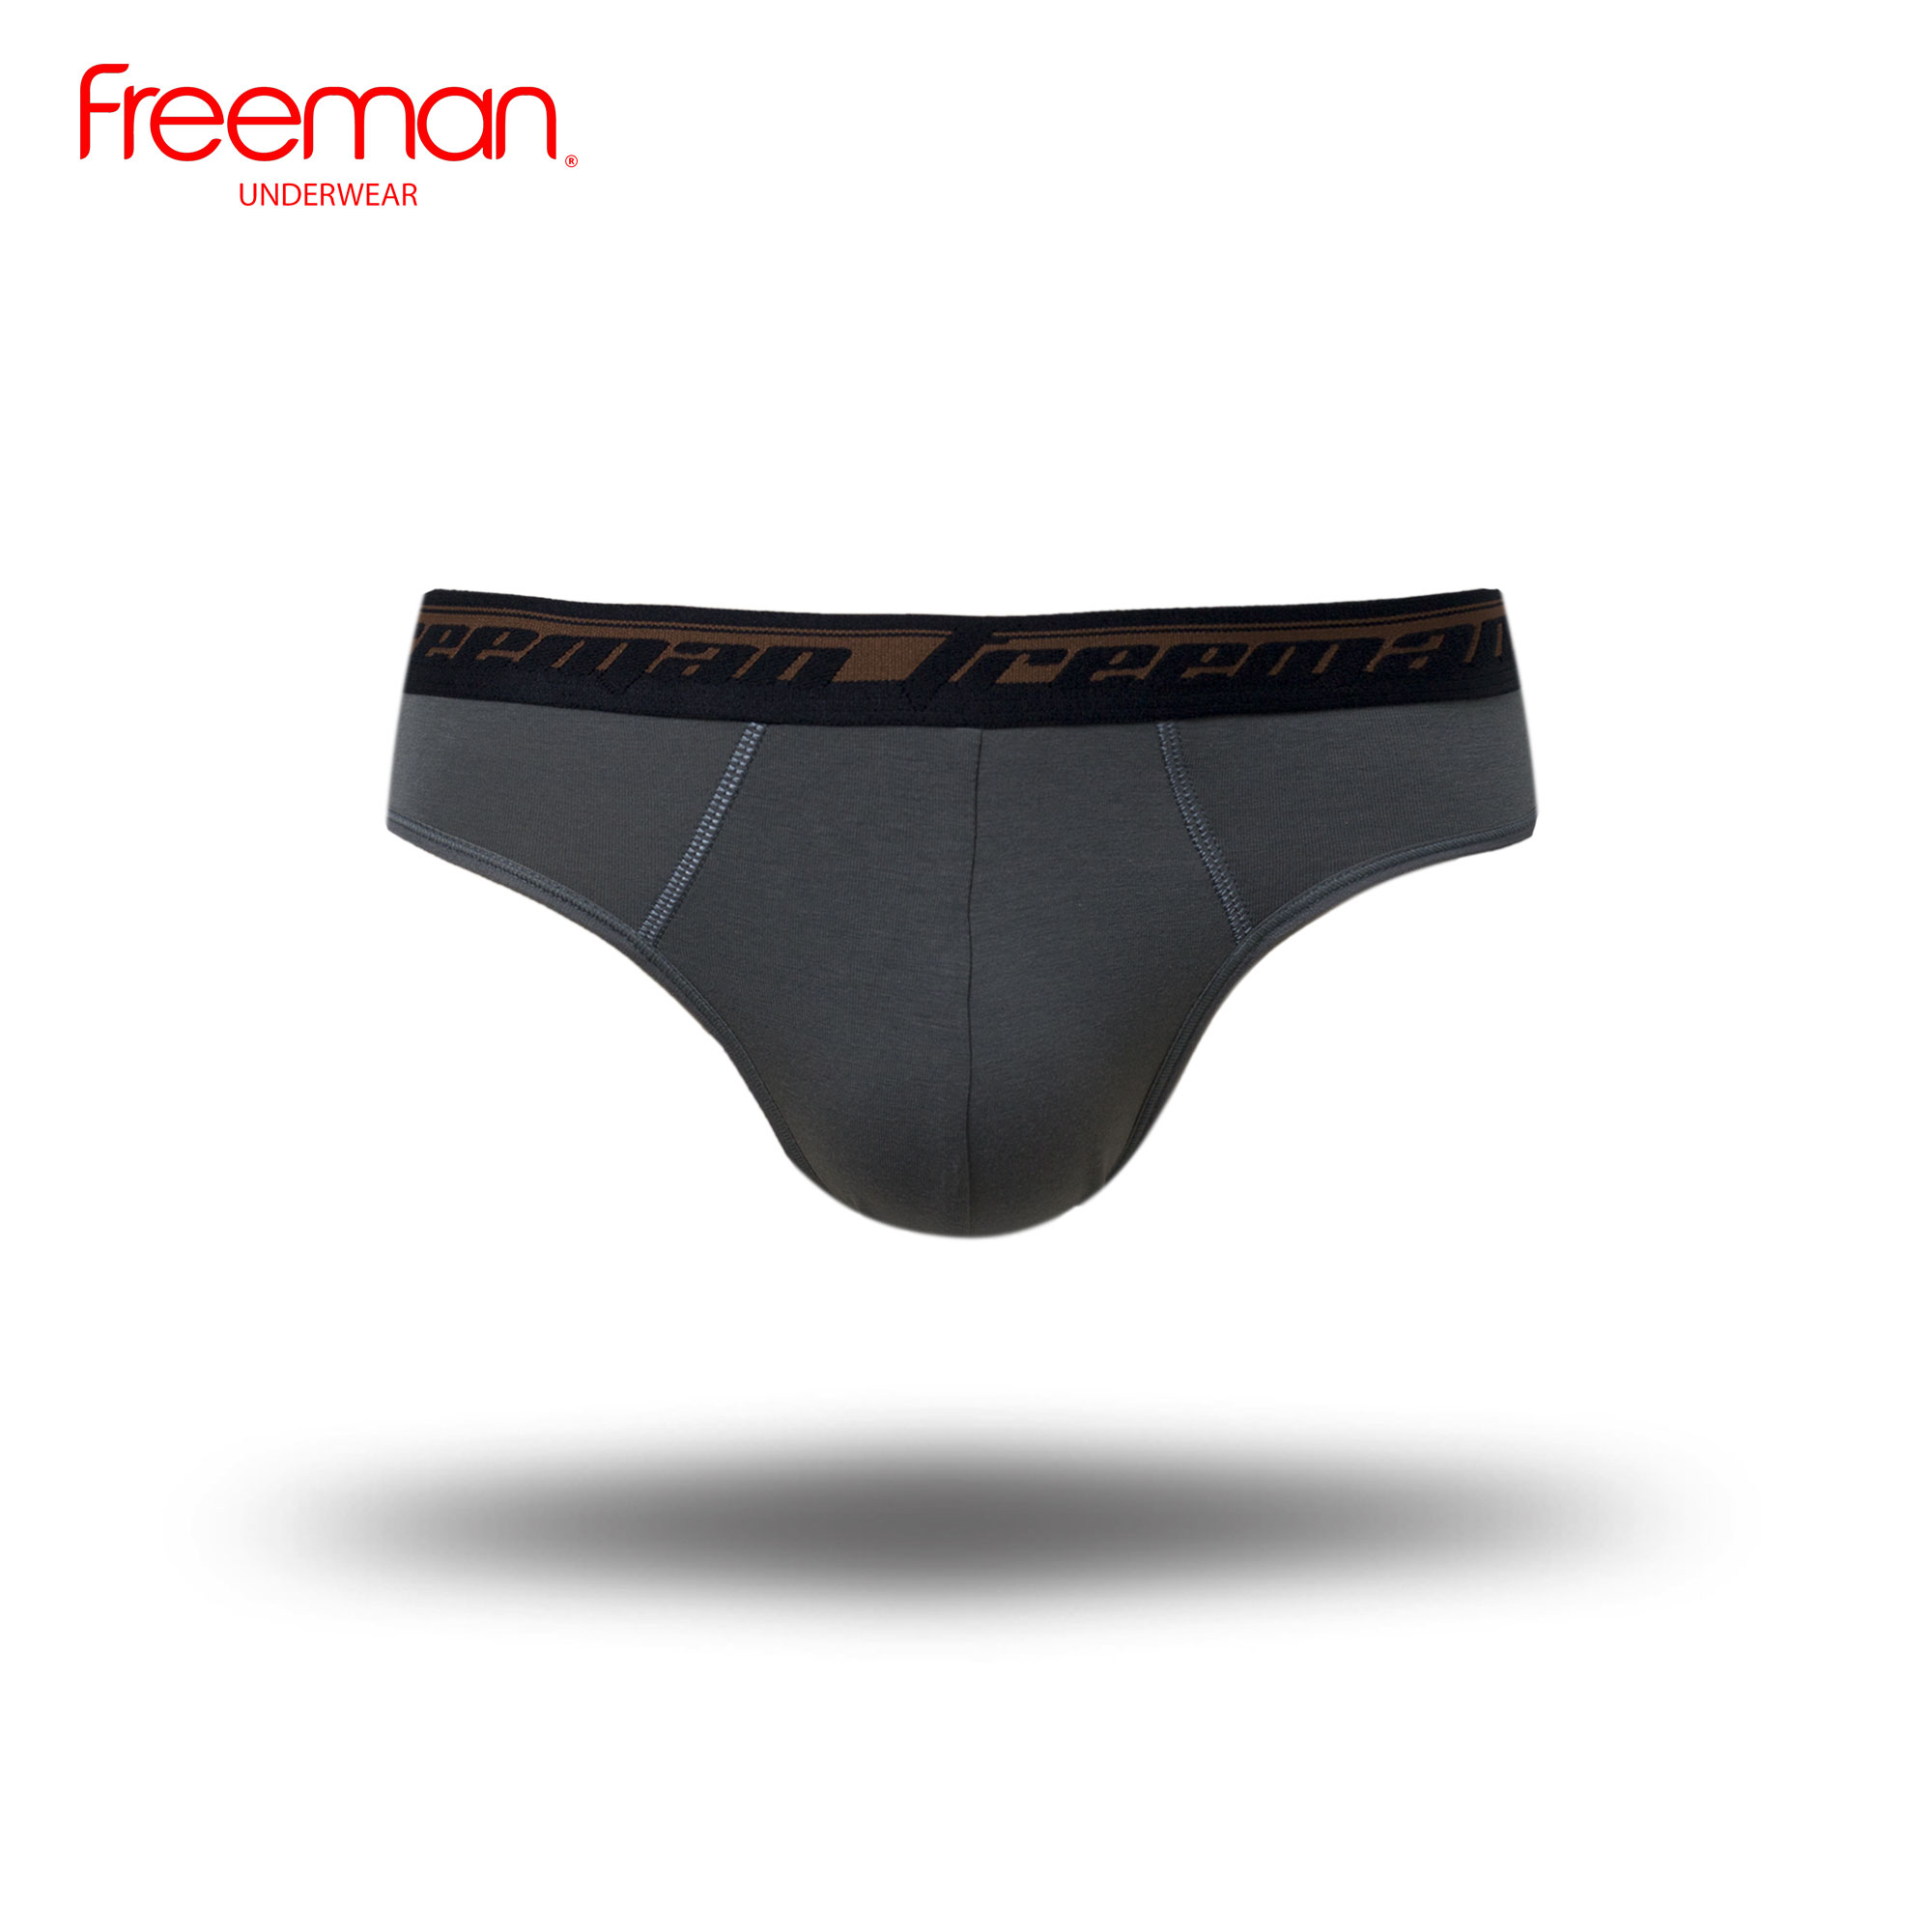 Combo 5 quần lót nam Freeman lưng thun bản, chất liệu TC spandex 6060